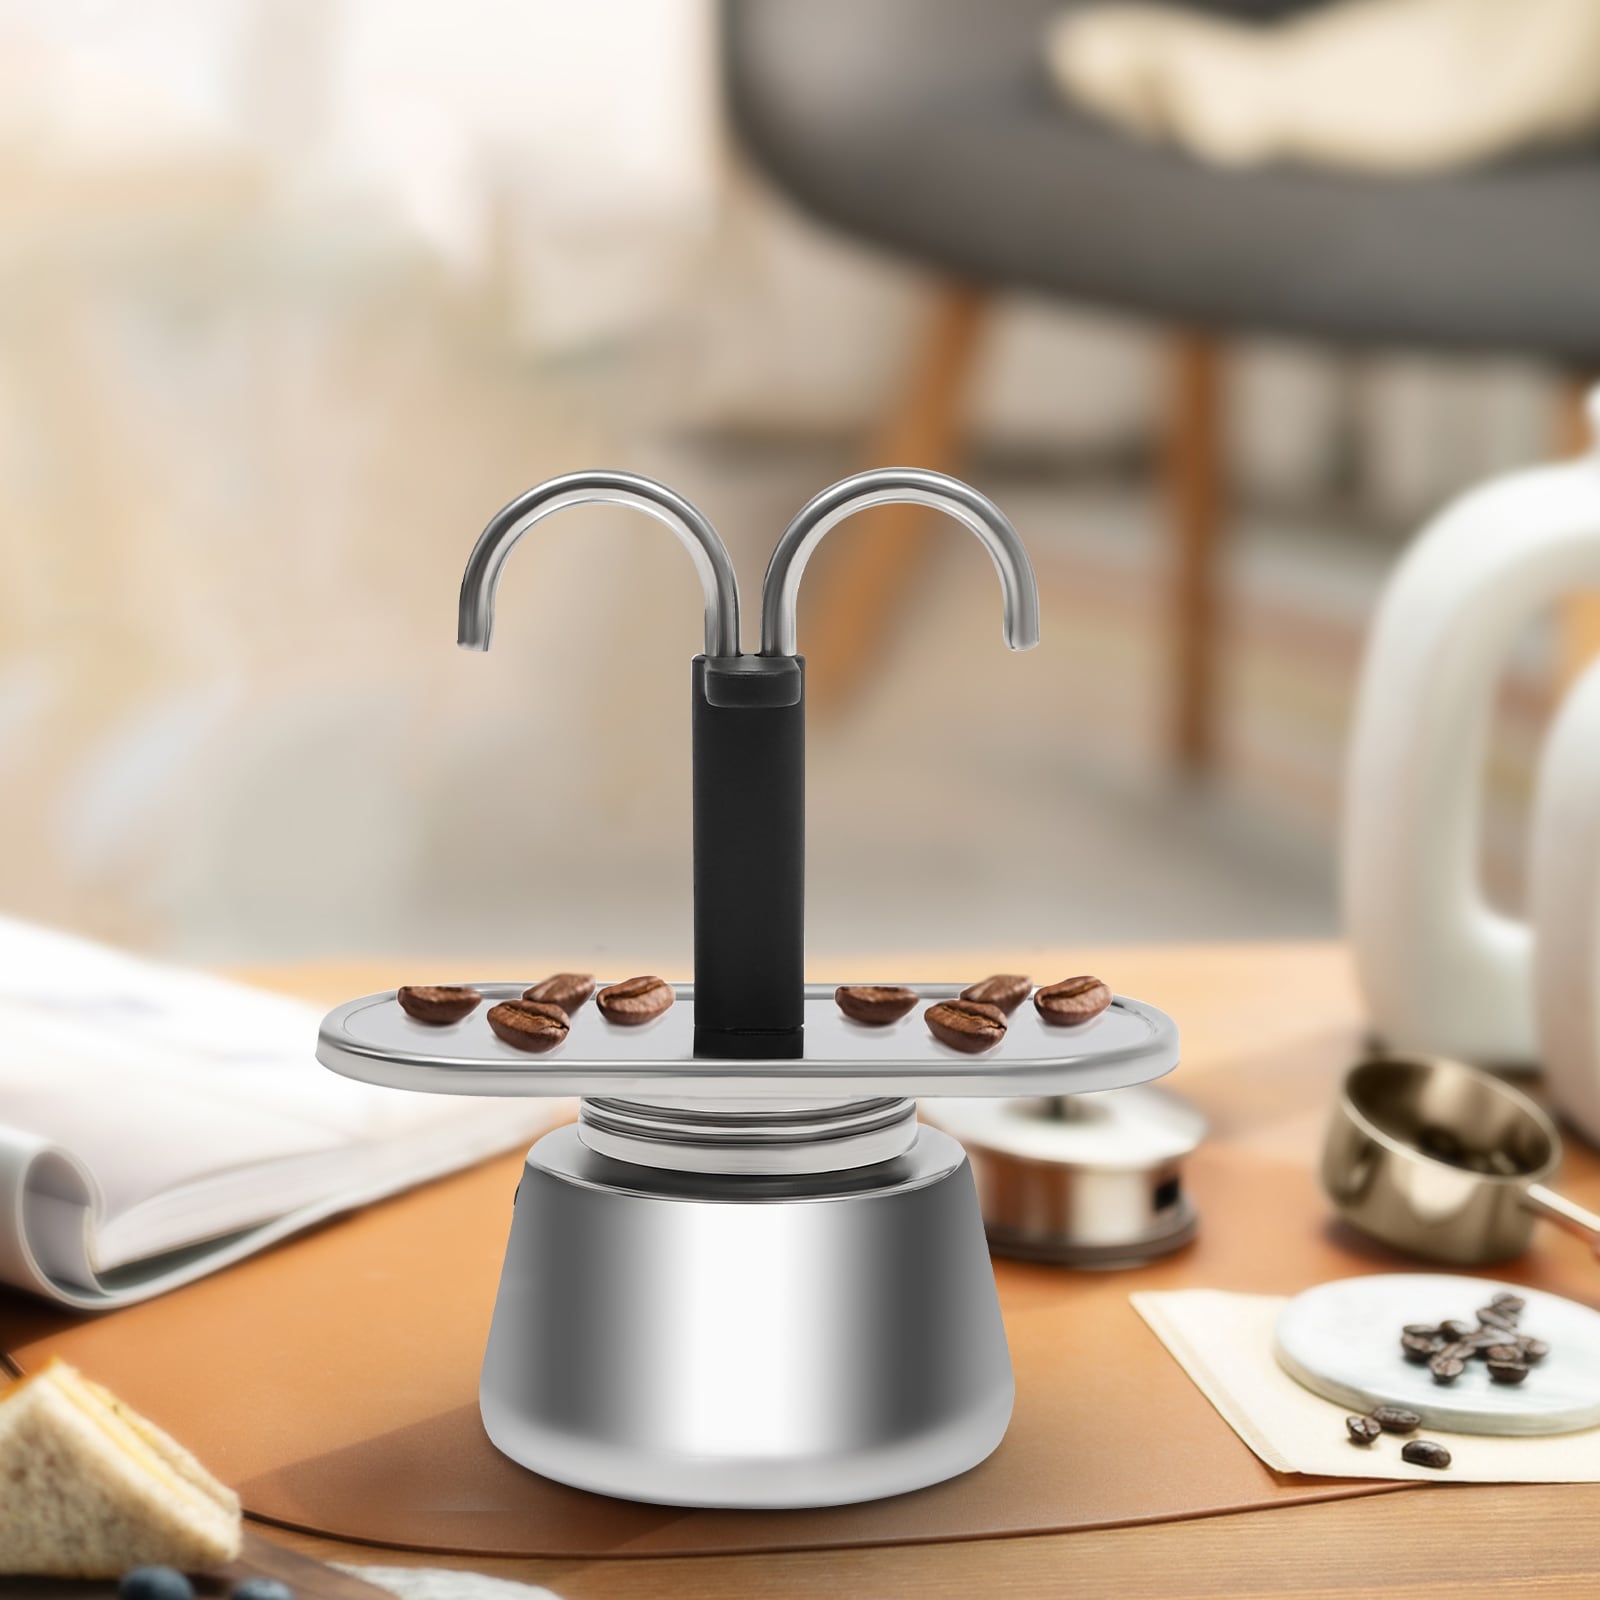 https://ak1.ostkcdn.com/images/products/is/images/direct/c2dd49f26ec6f919660340df5450373126d63a67/Mini-2-Cup-Moka-Pot-Espresso-Coffee-Maker.jpg